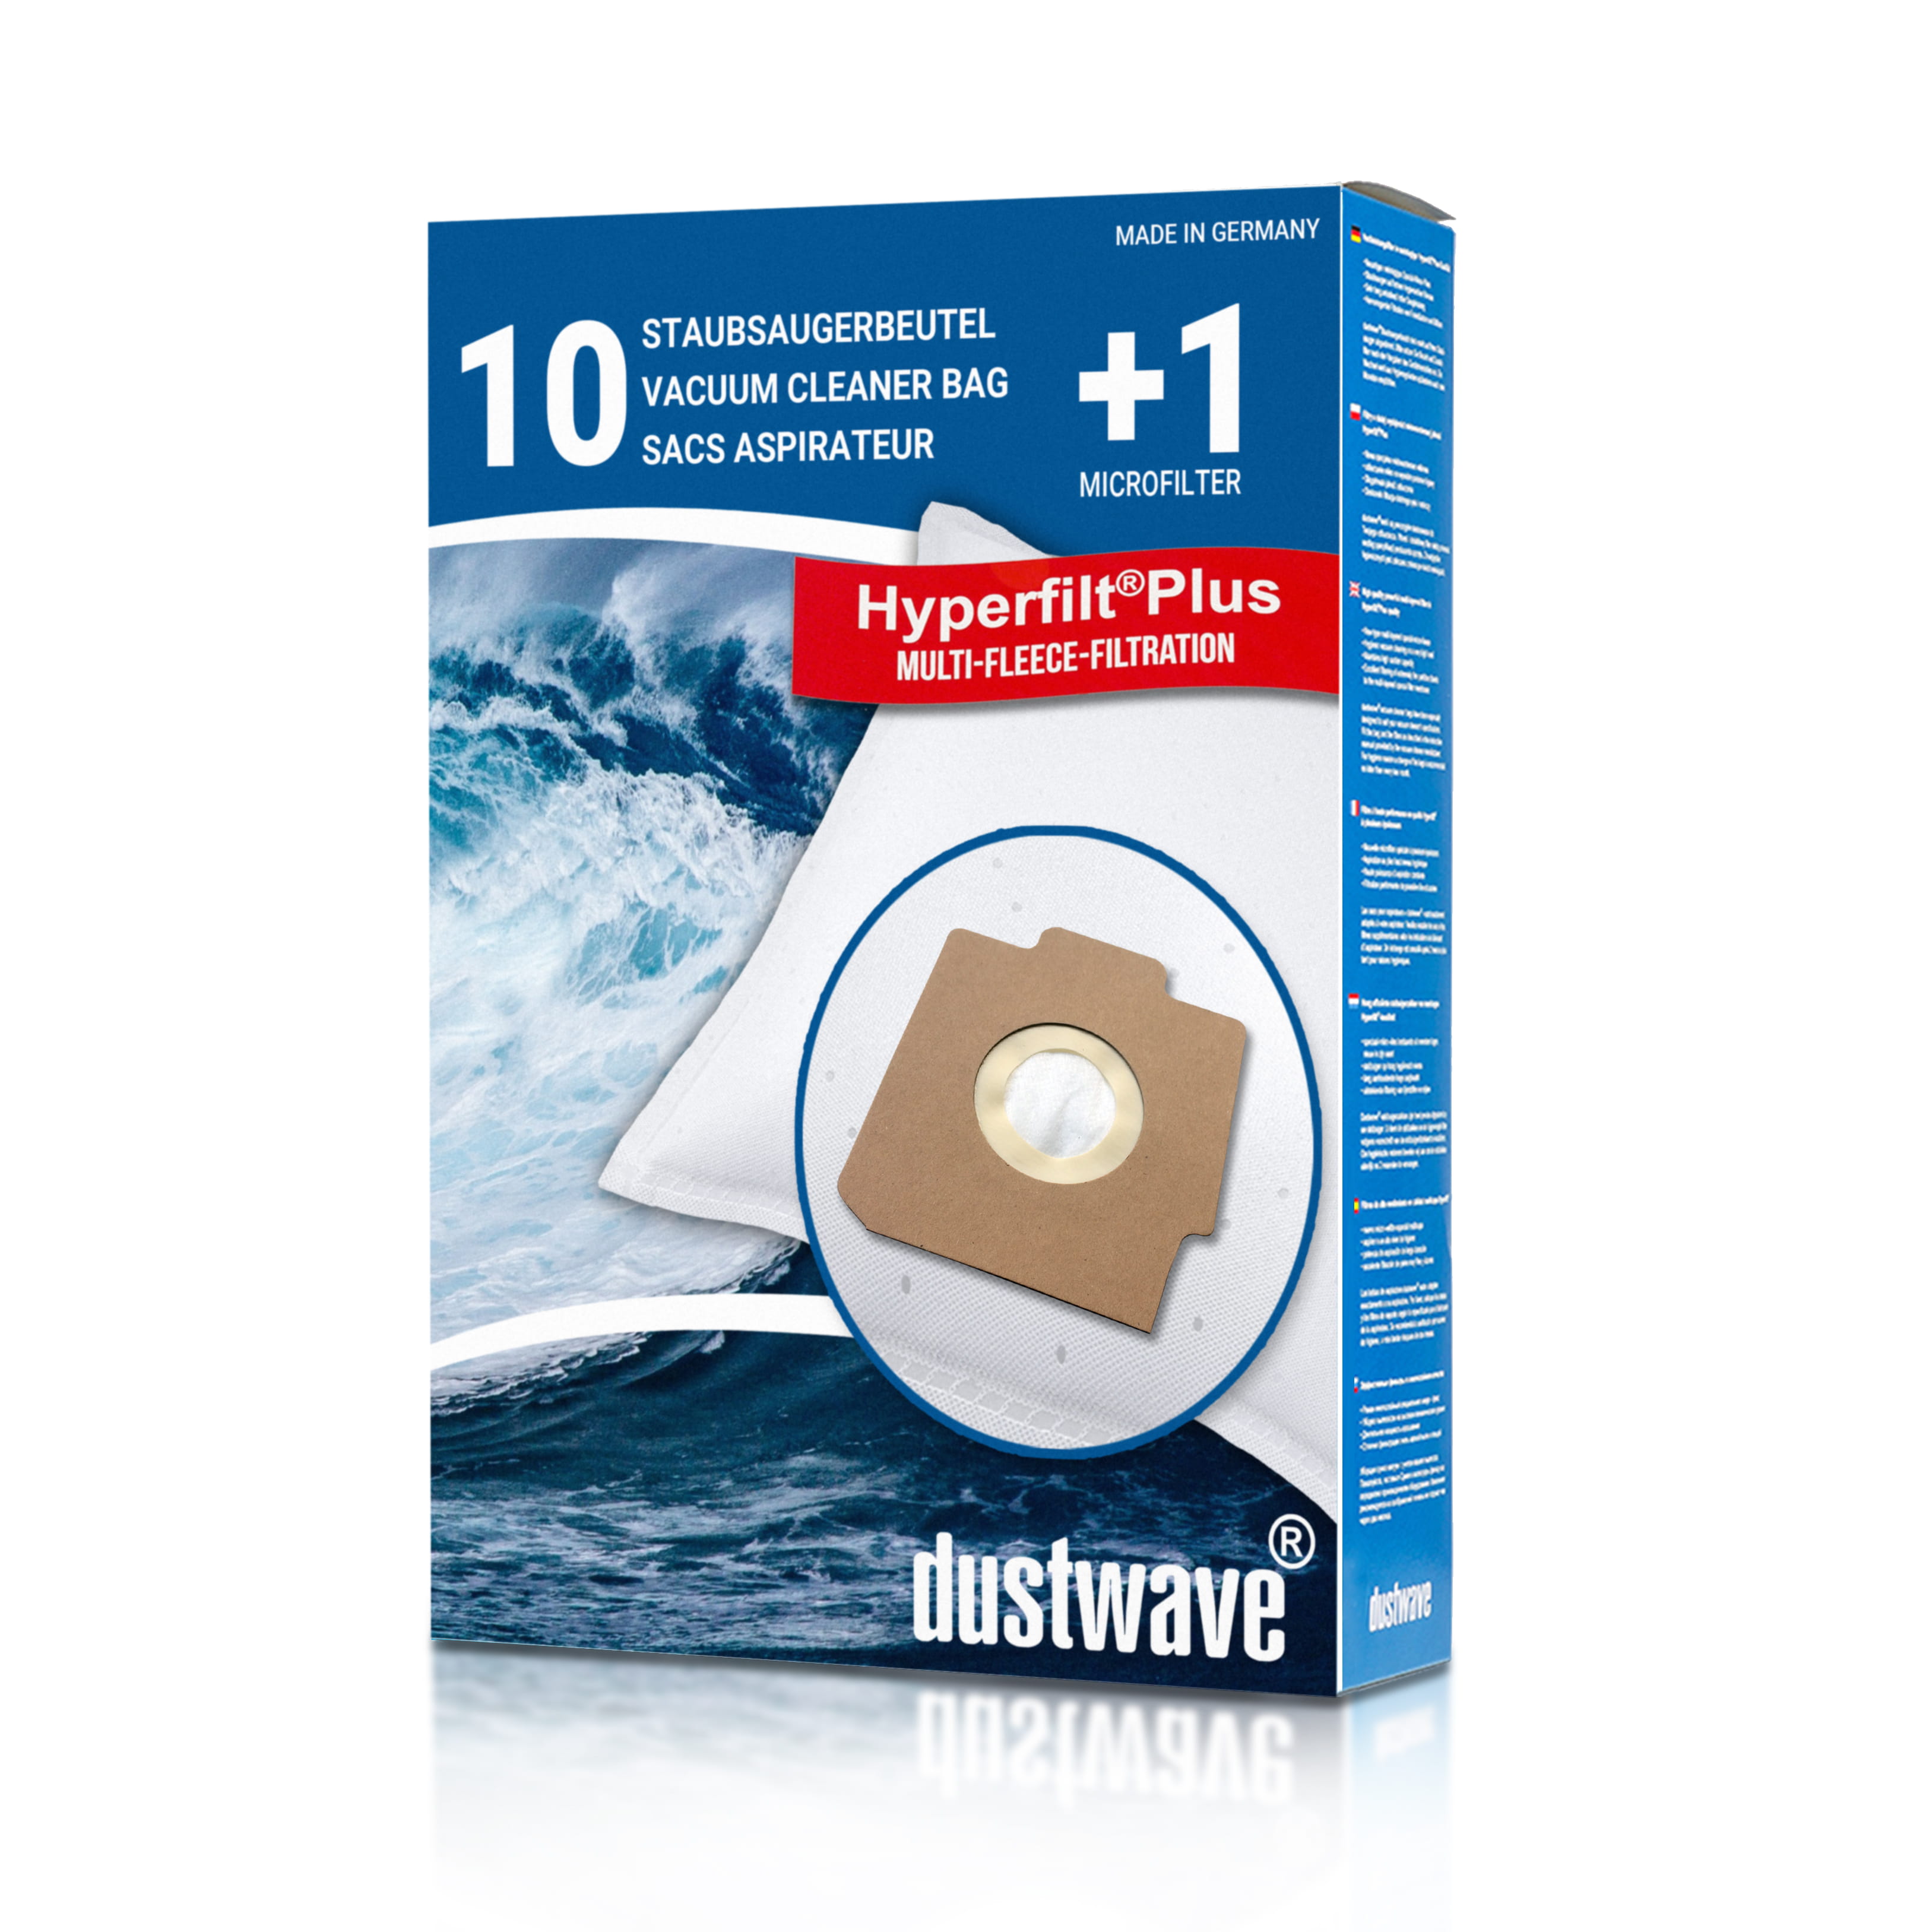 Dustwave® 10 Staubsaugerbeutel für Hoover SC240... / TRSC240 Alpina - hocheffizient, mehrlagiges Mikrovlies mit Hygieneverschluss - Made in Germany